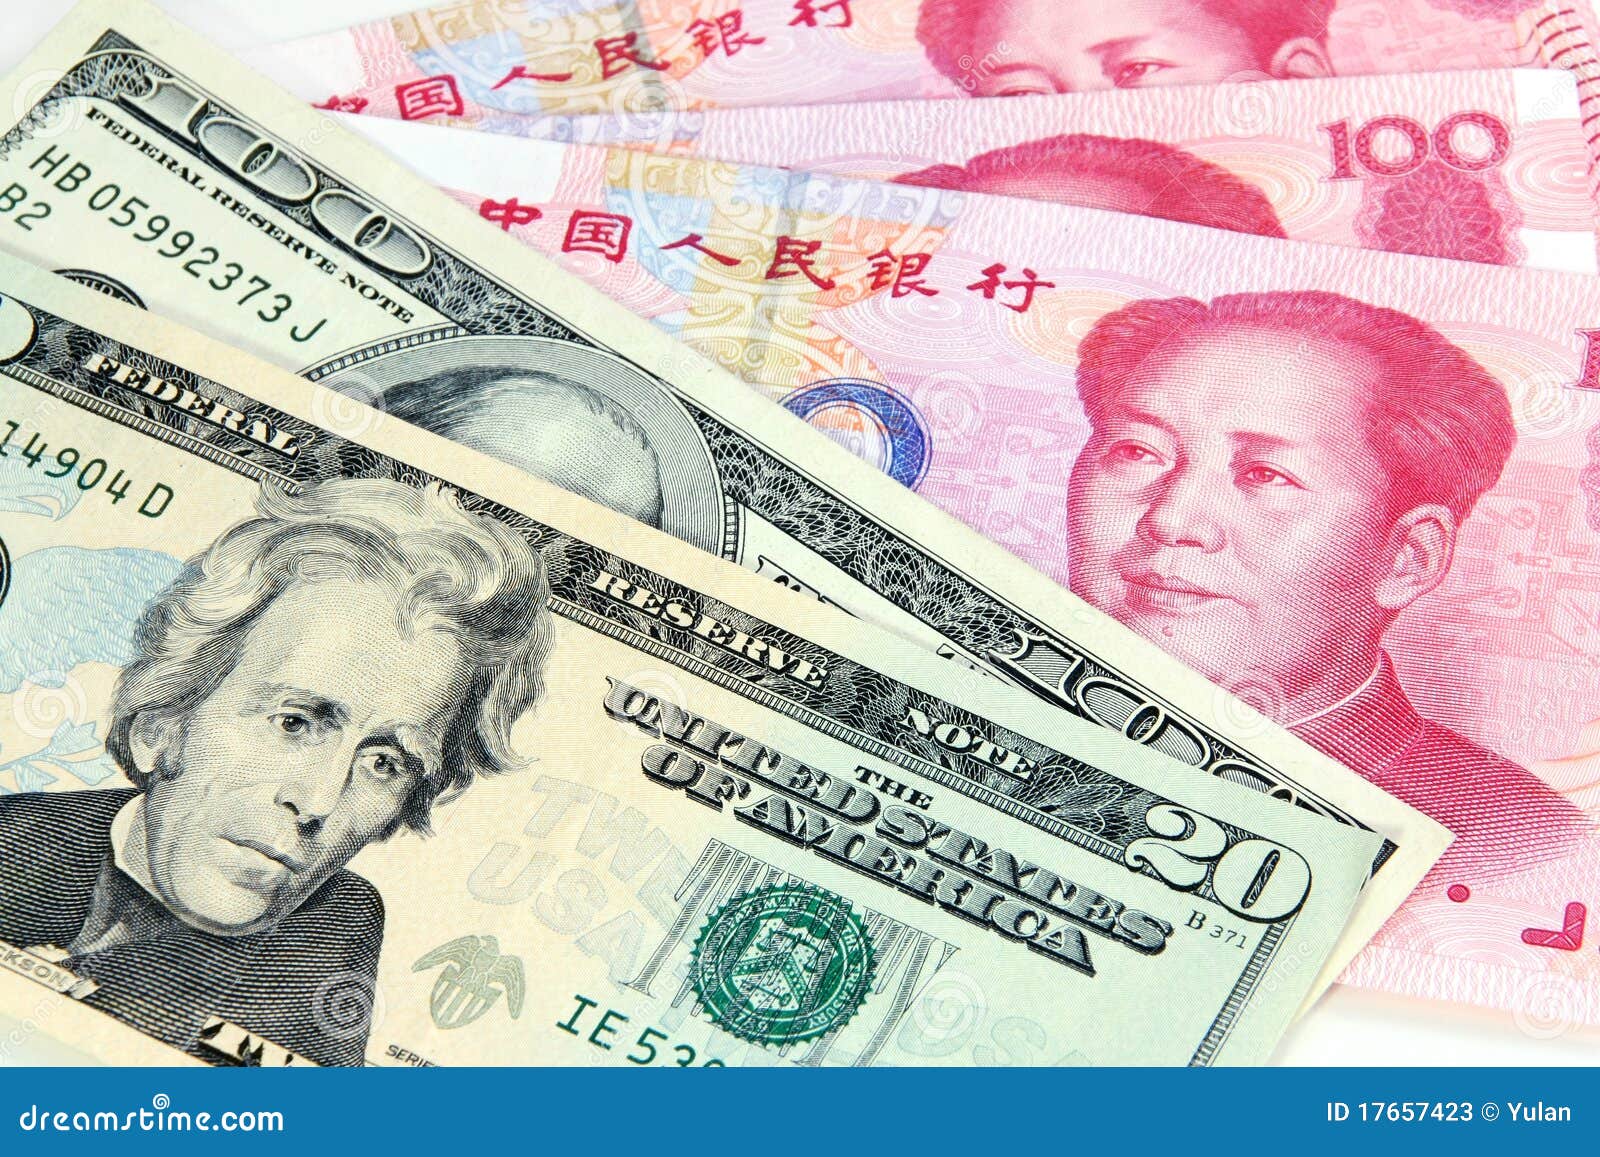 Июань. Юань (валюта). Юань к доллару. Китайские деньги. Китайский доллар.